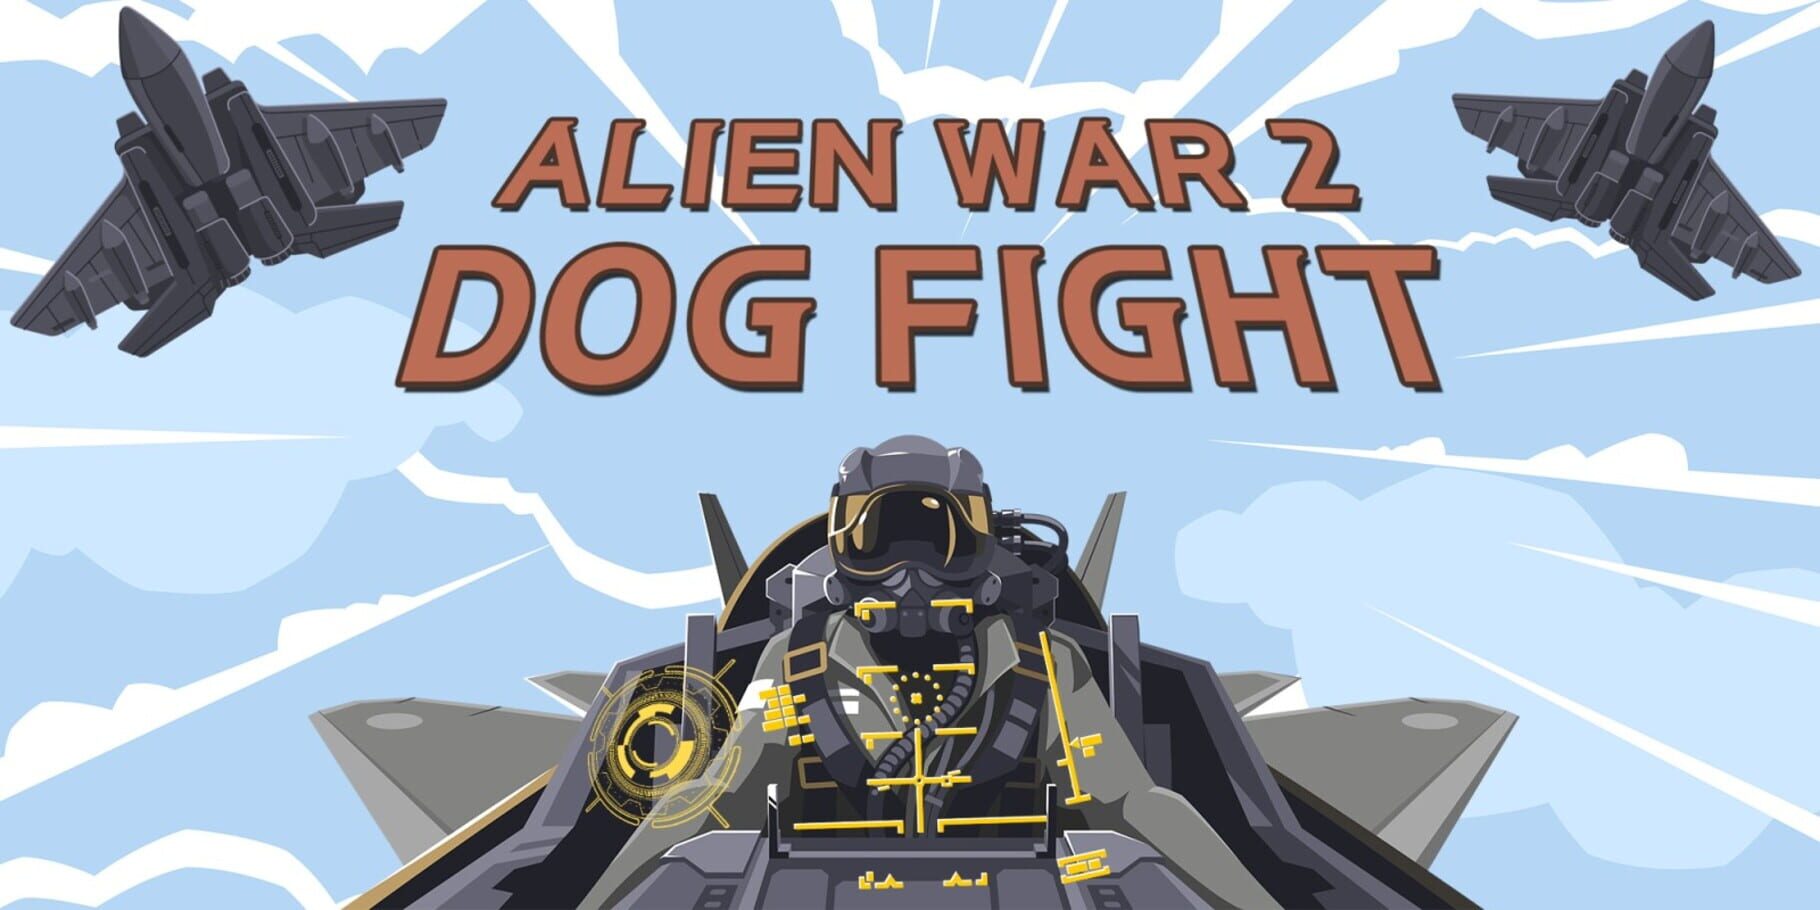 Alien War 2 DogFight artwork